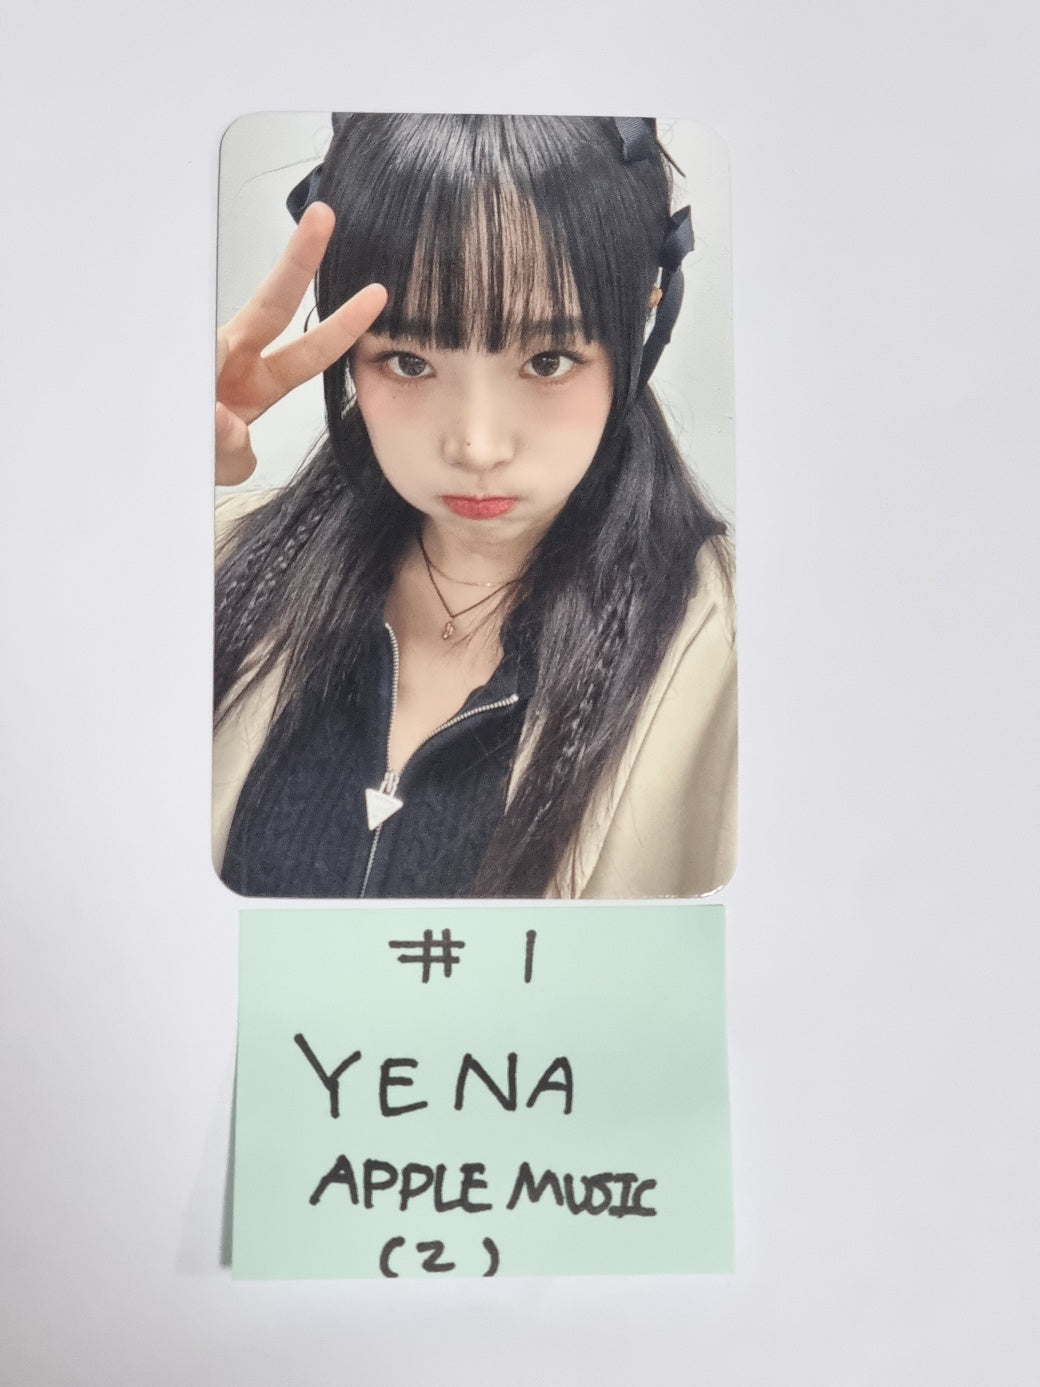 YENA "Love War" - Apple Music Fansign Event Photocard Round 5